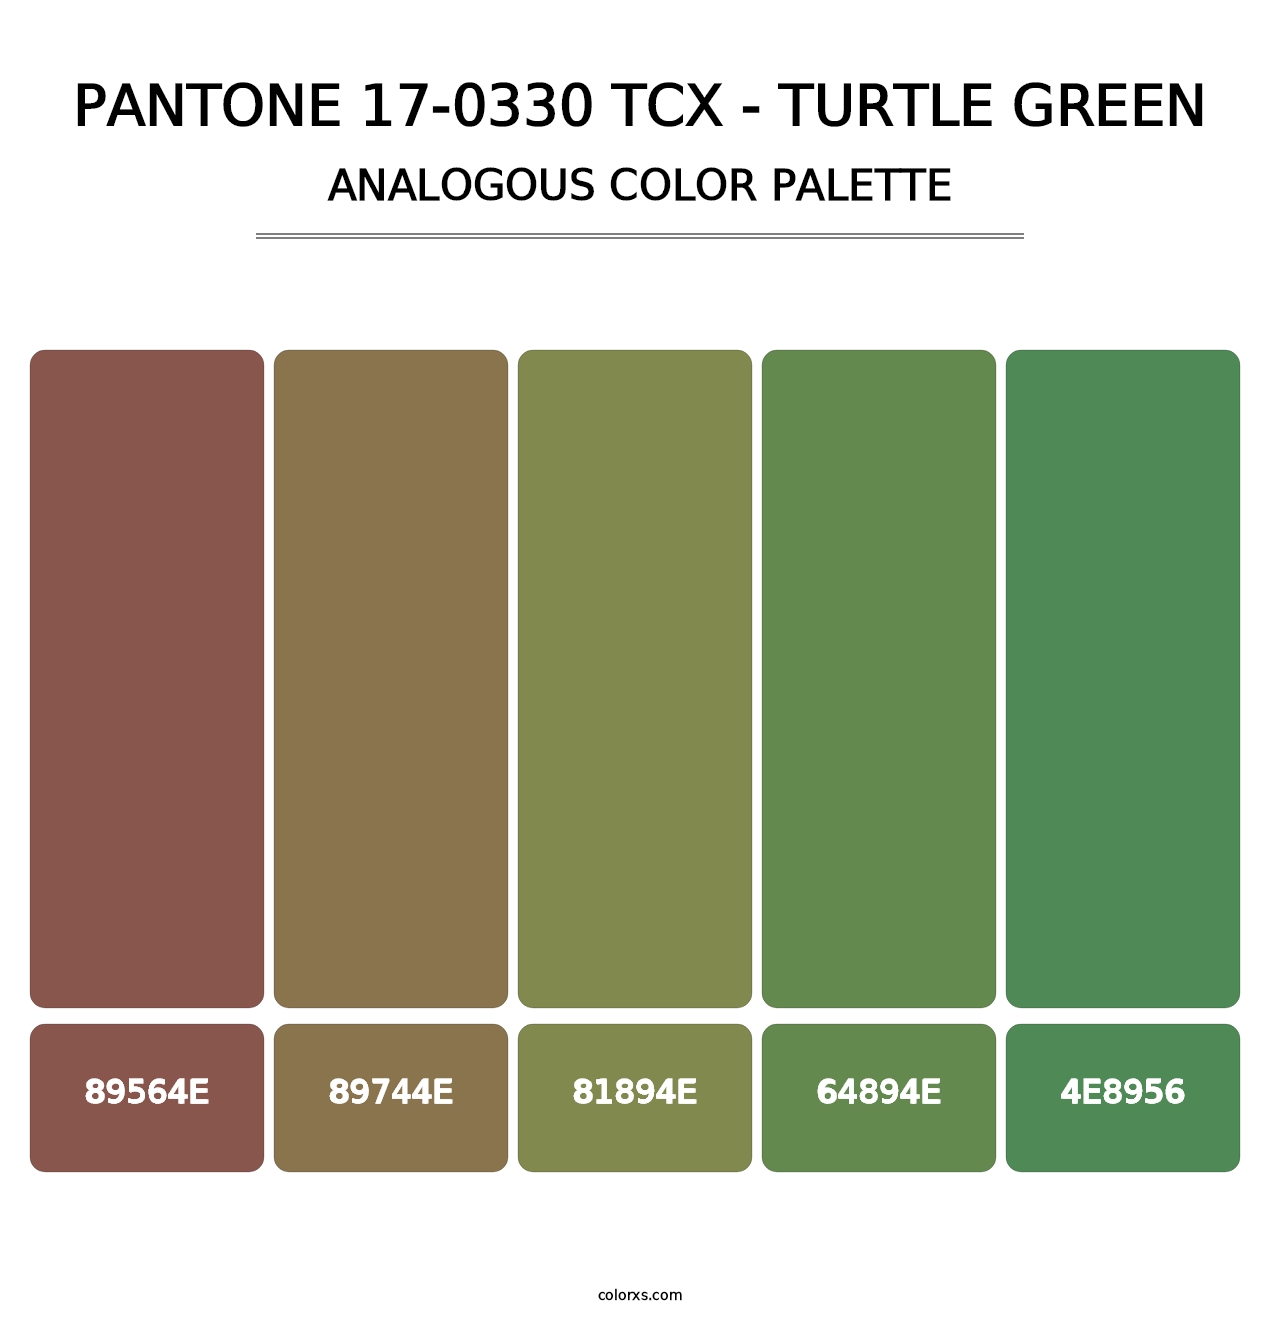 PANTONE 17-0330 TCX - Turtle Green - Analogous Color Palette